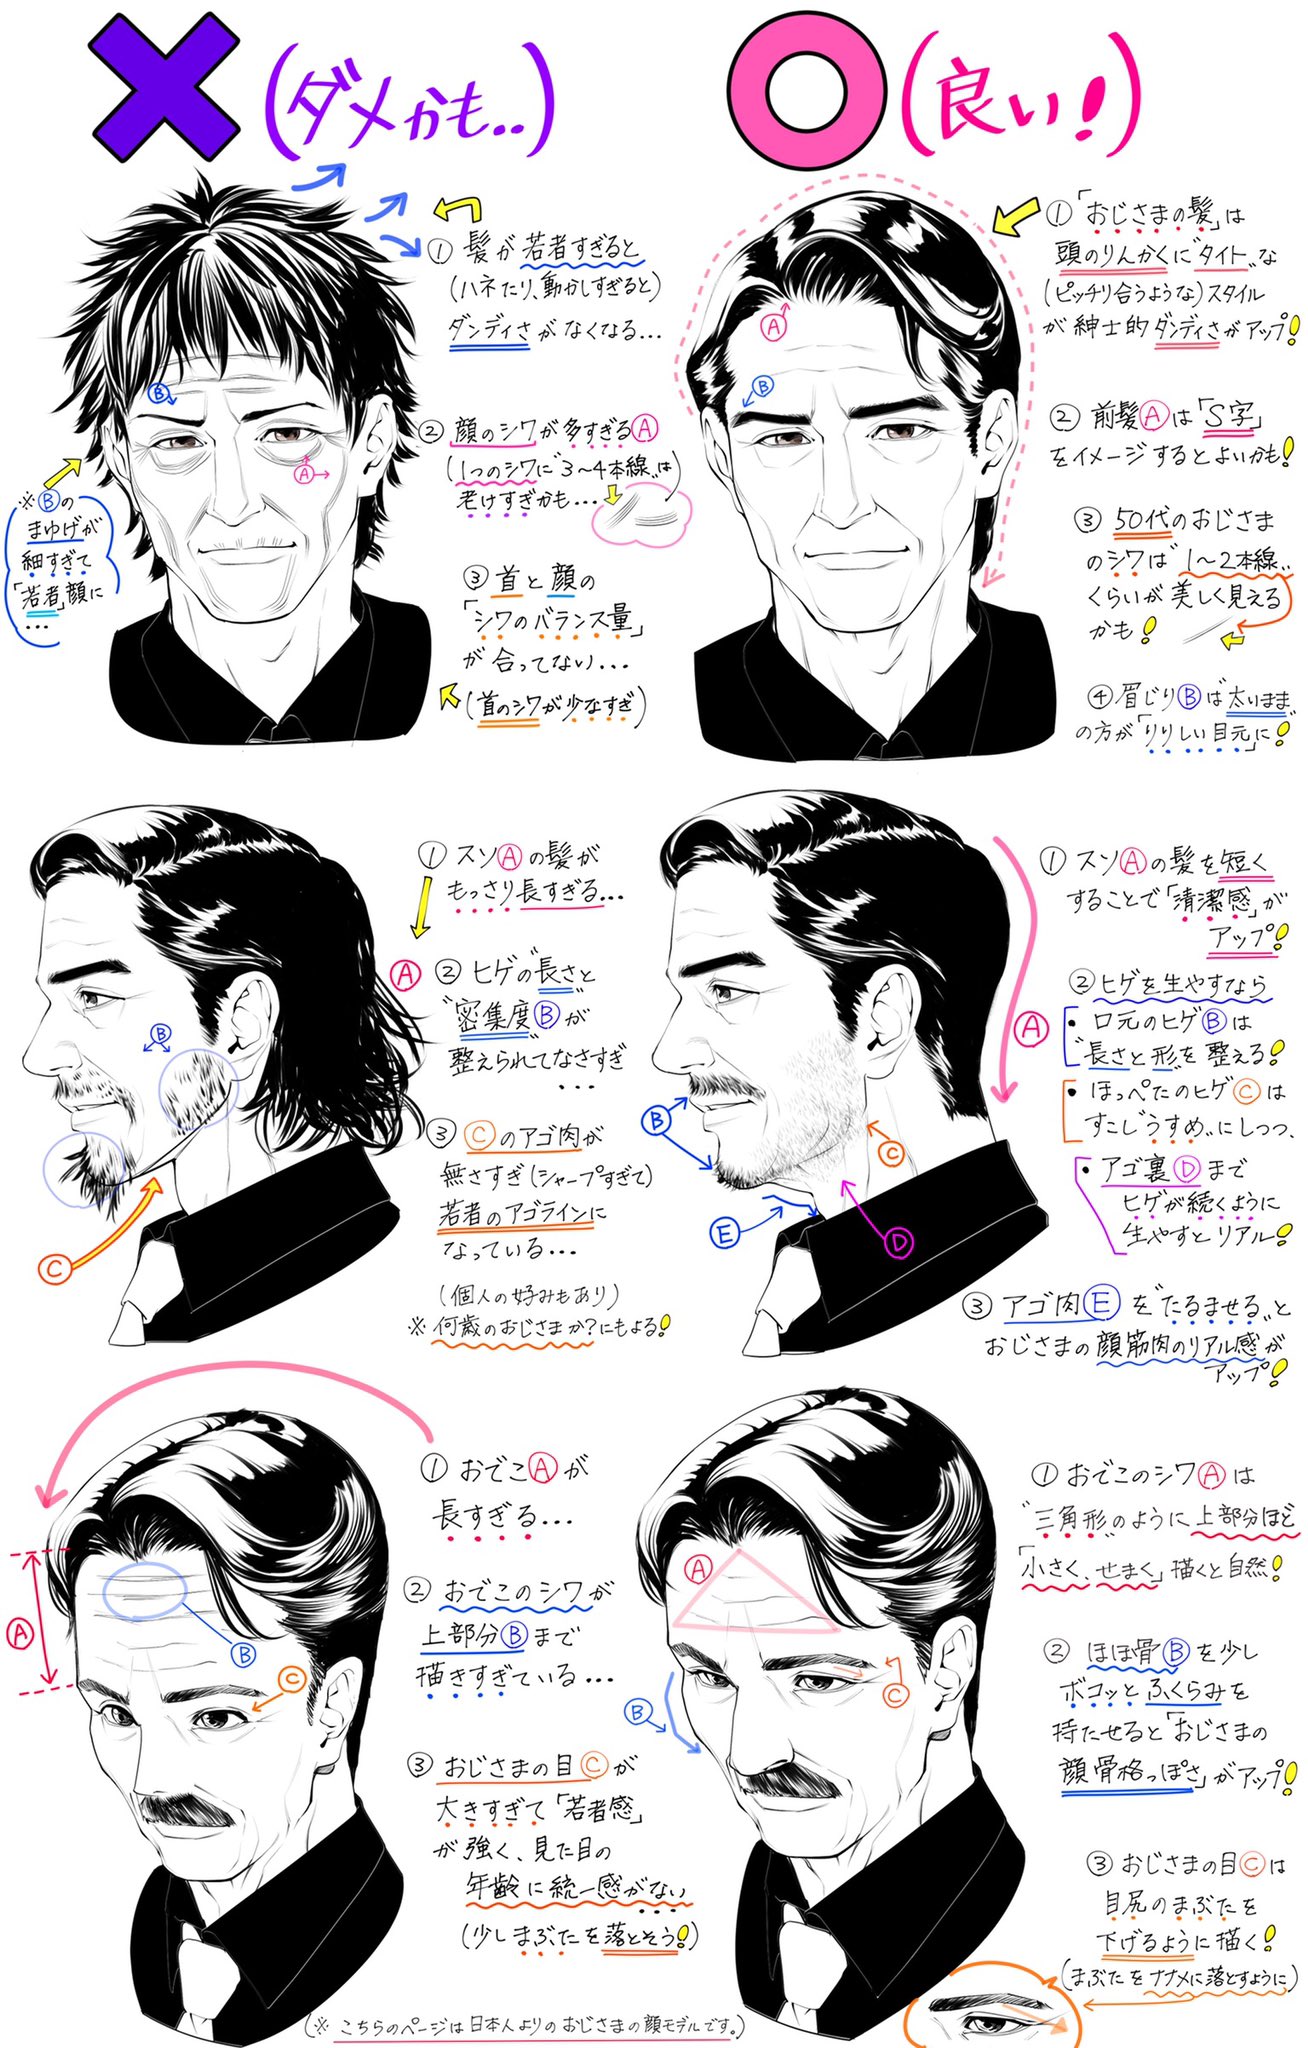 吉村拓也 イラスト講座 イケメンおじさまの描き方 渋かっこいい男性の顔が上達する ダメかも と 良いかも T Co Rkzqei8a Twitter